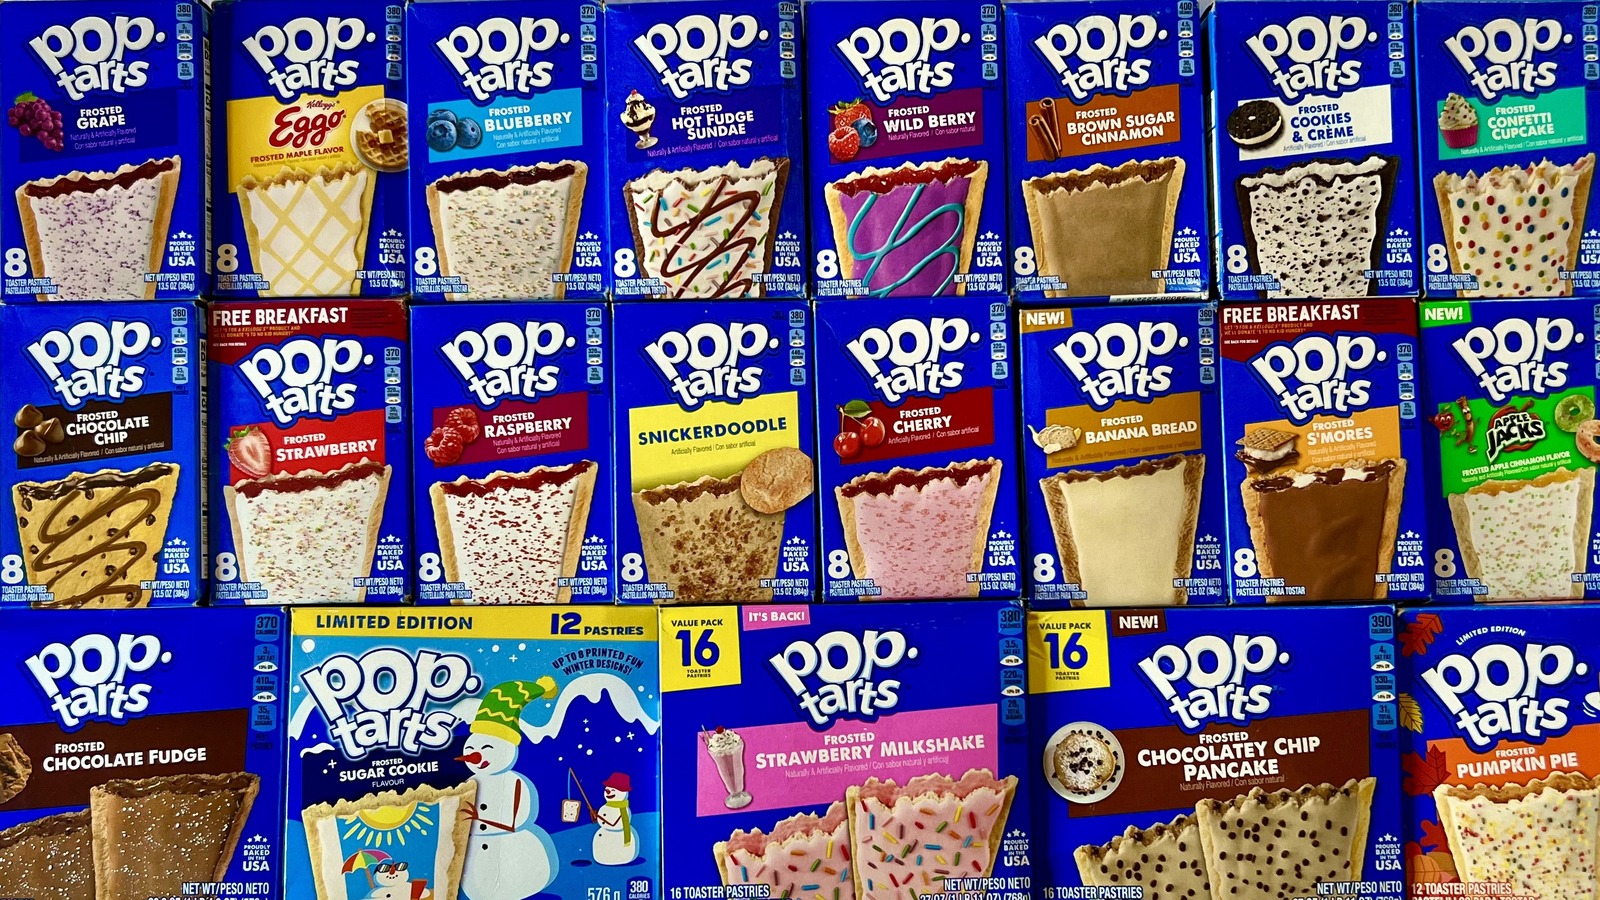 Pop-Tarts Brings Back Strawberry Milkshake Flavor